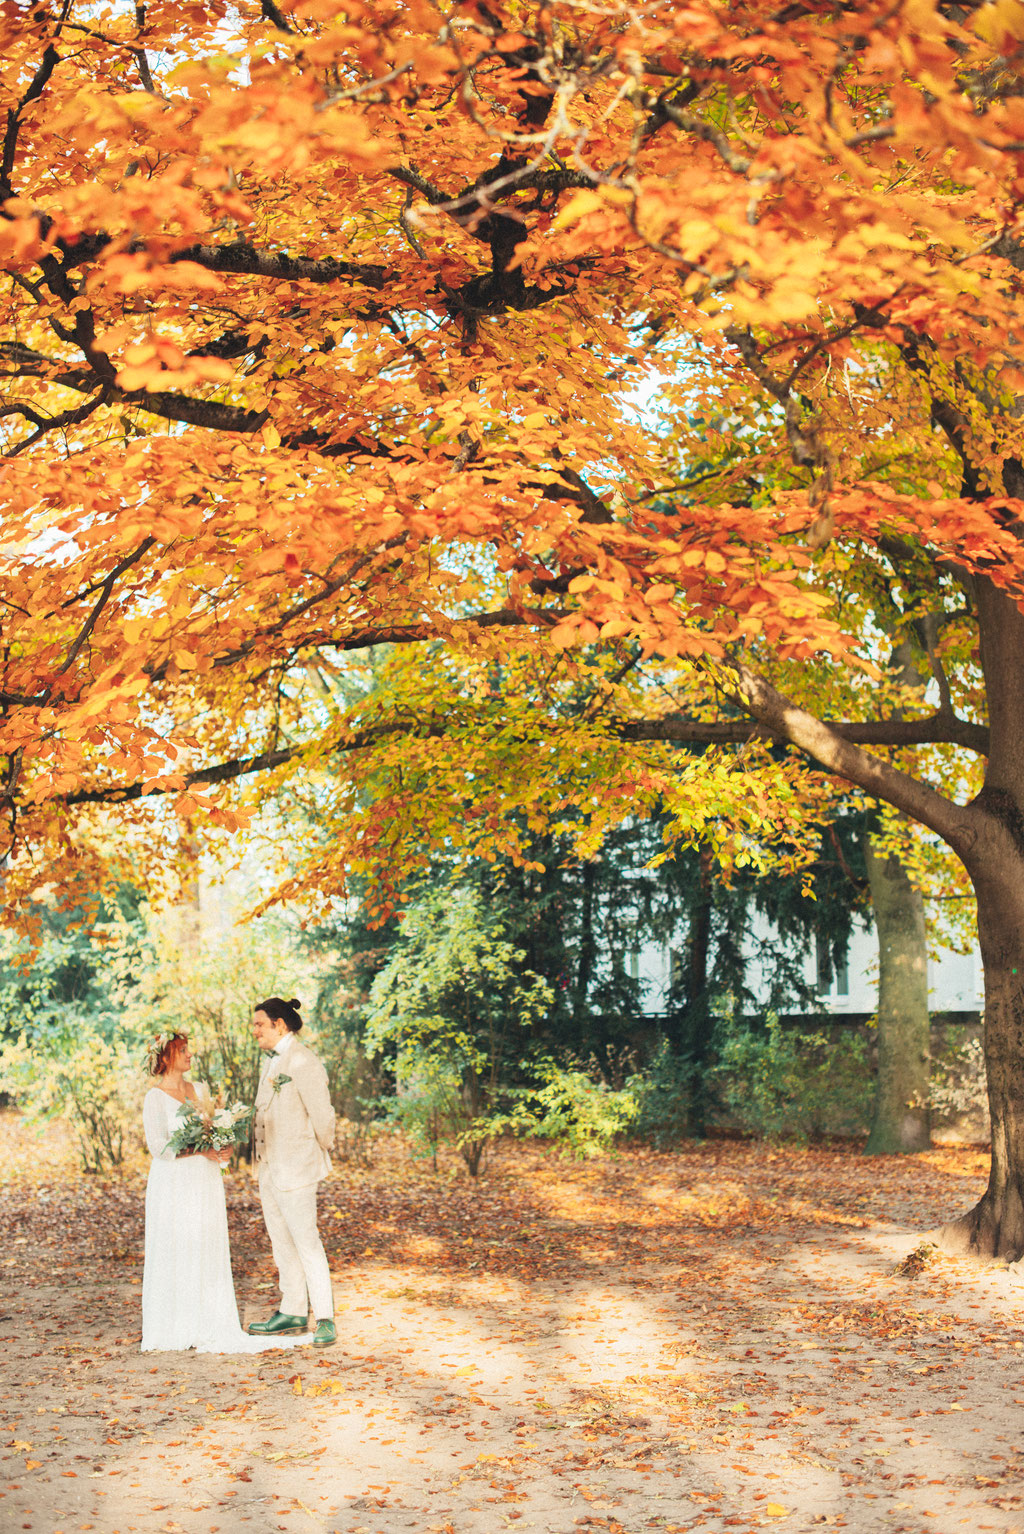 Professionelles Hochzeitsfoto von Braut und Bräutigam in herbstlicher Umgebung unter einem großen Baum.